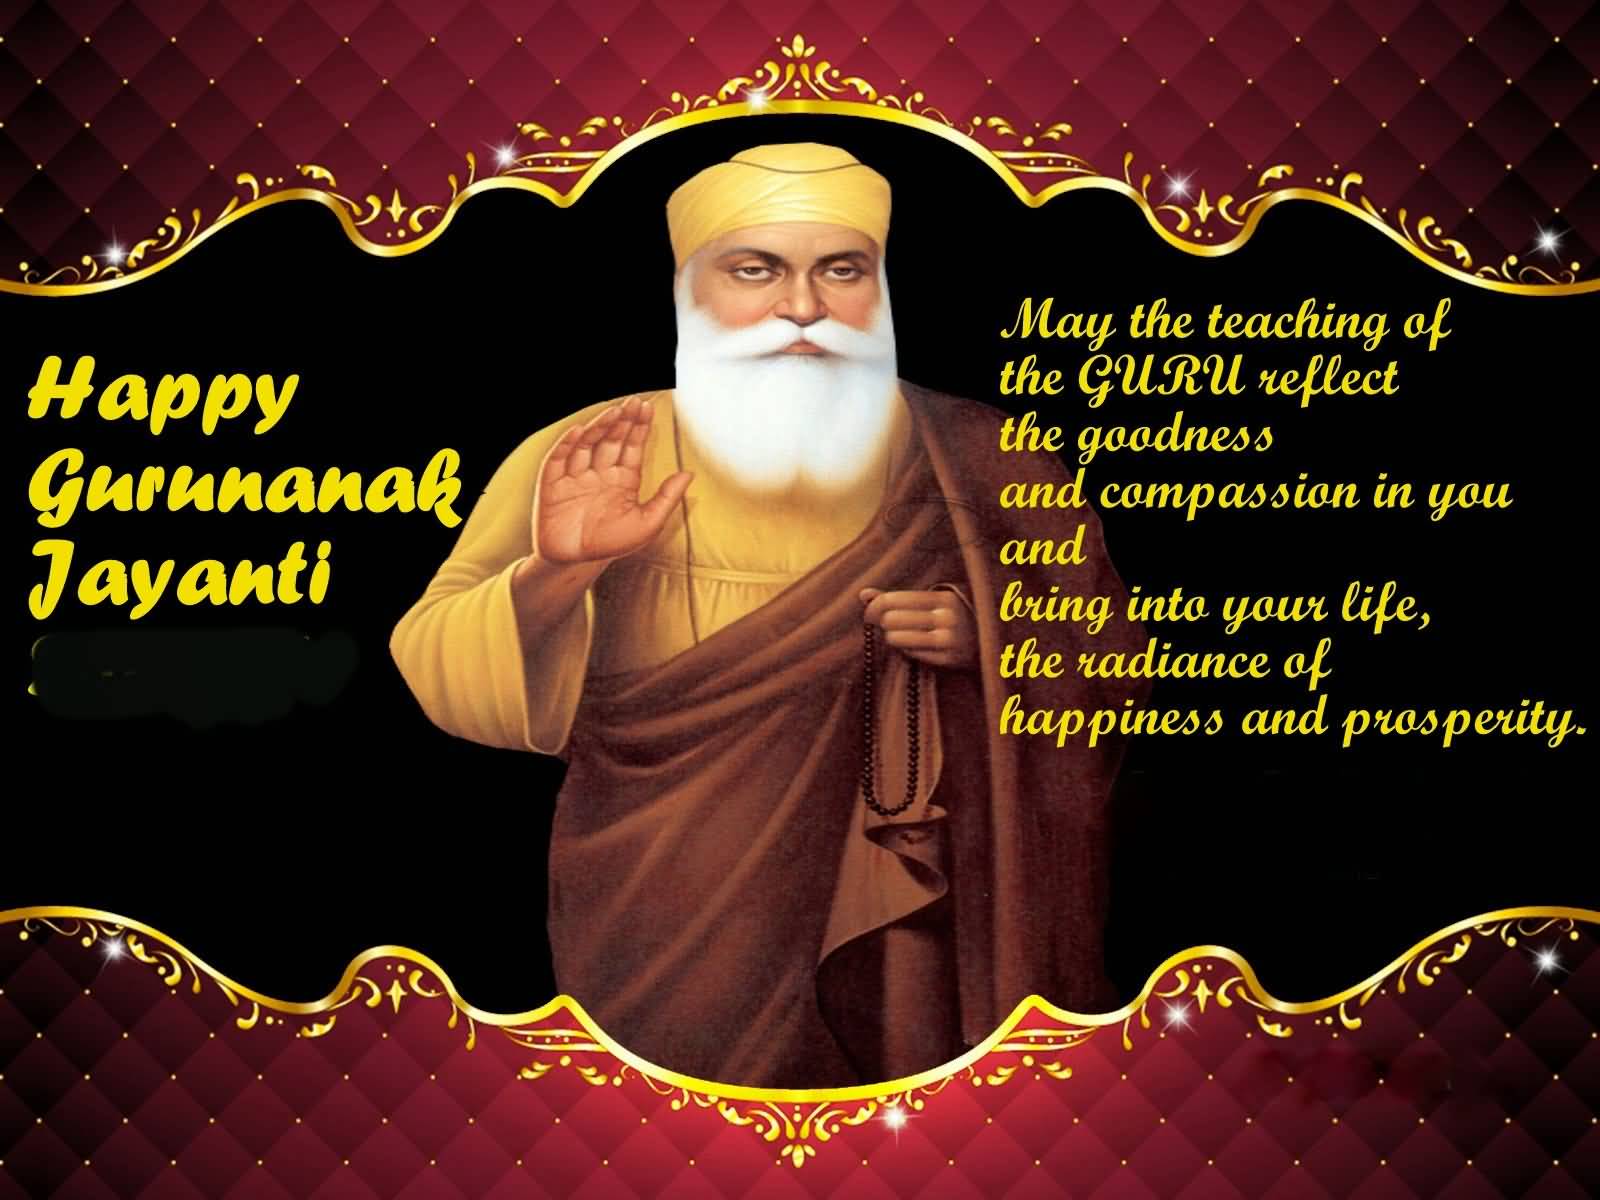 Happy Guru nanak jayanti gurpurab wishes